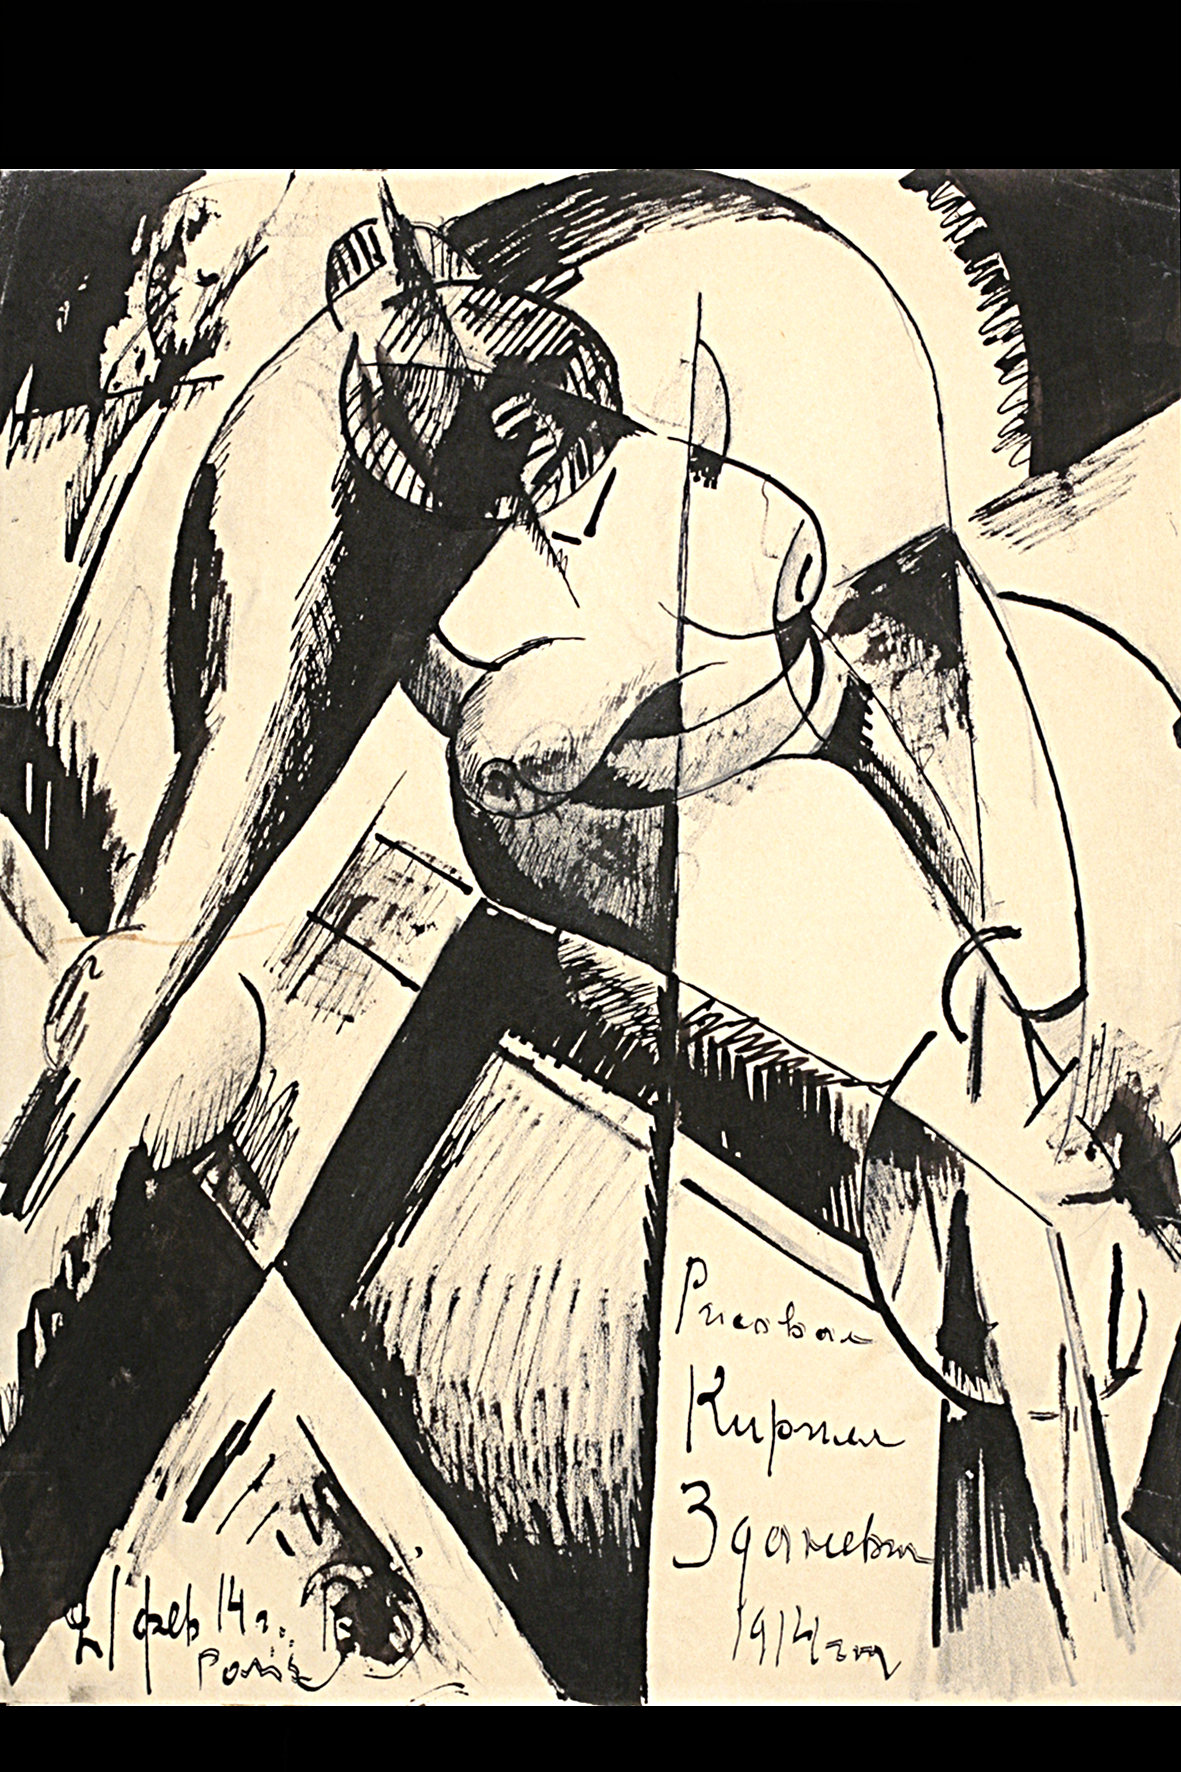 ტუში ქაღალდი; ტფილისი 1914. ს. ალანიას კოლექცია